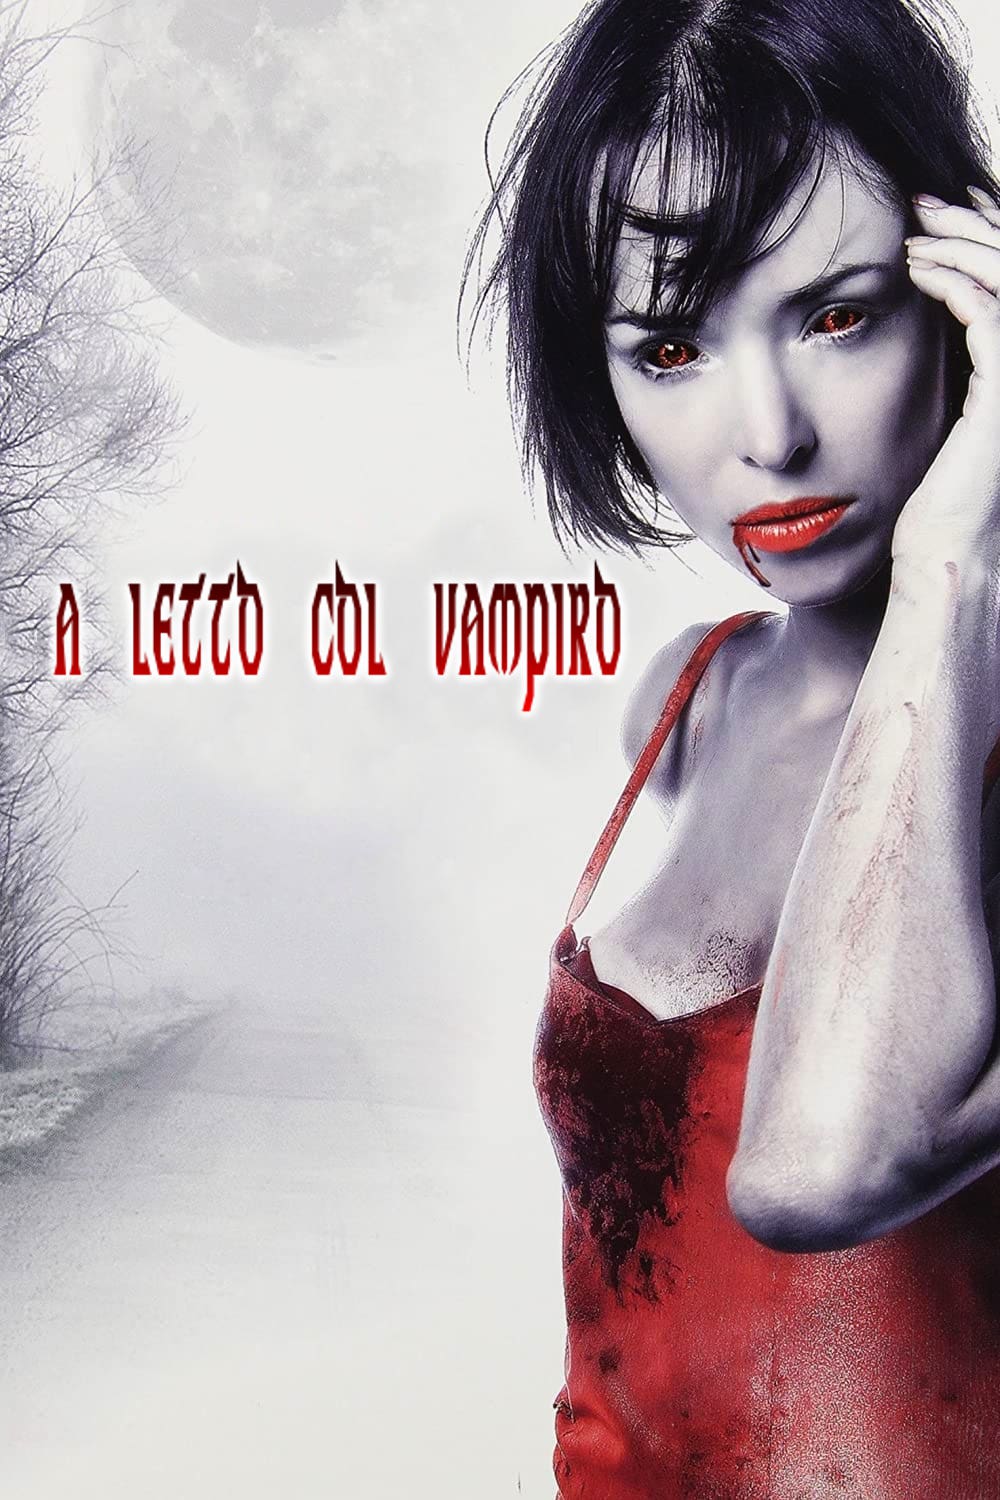 A letto col vampiro [HD] (2008)